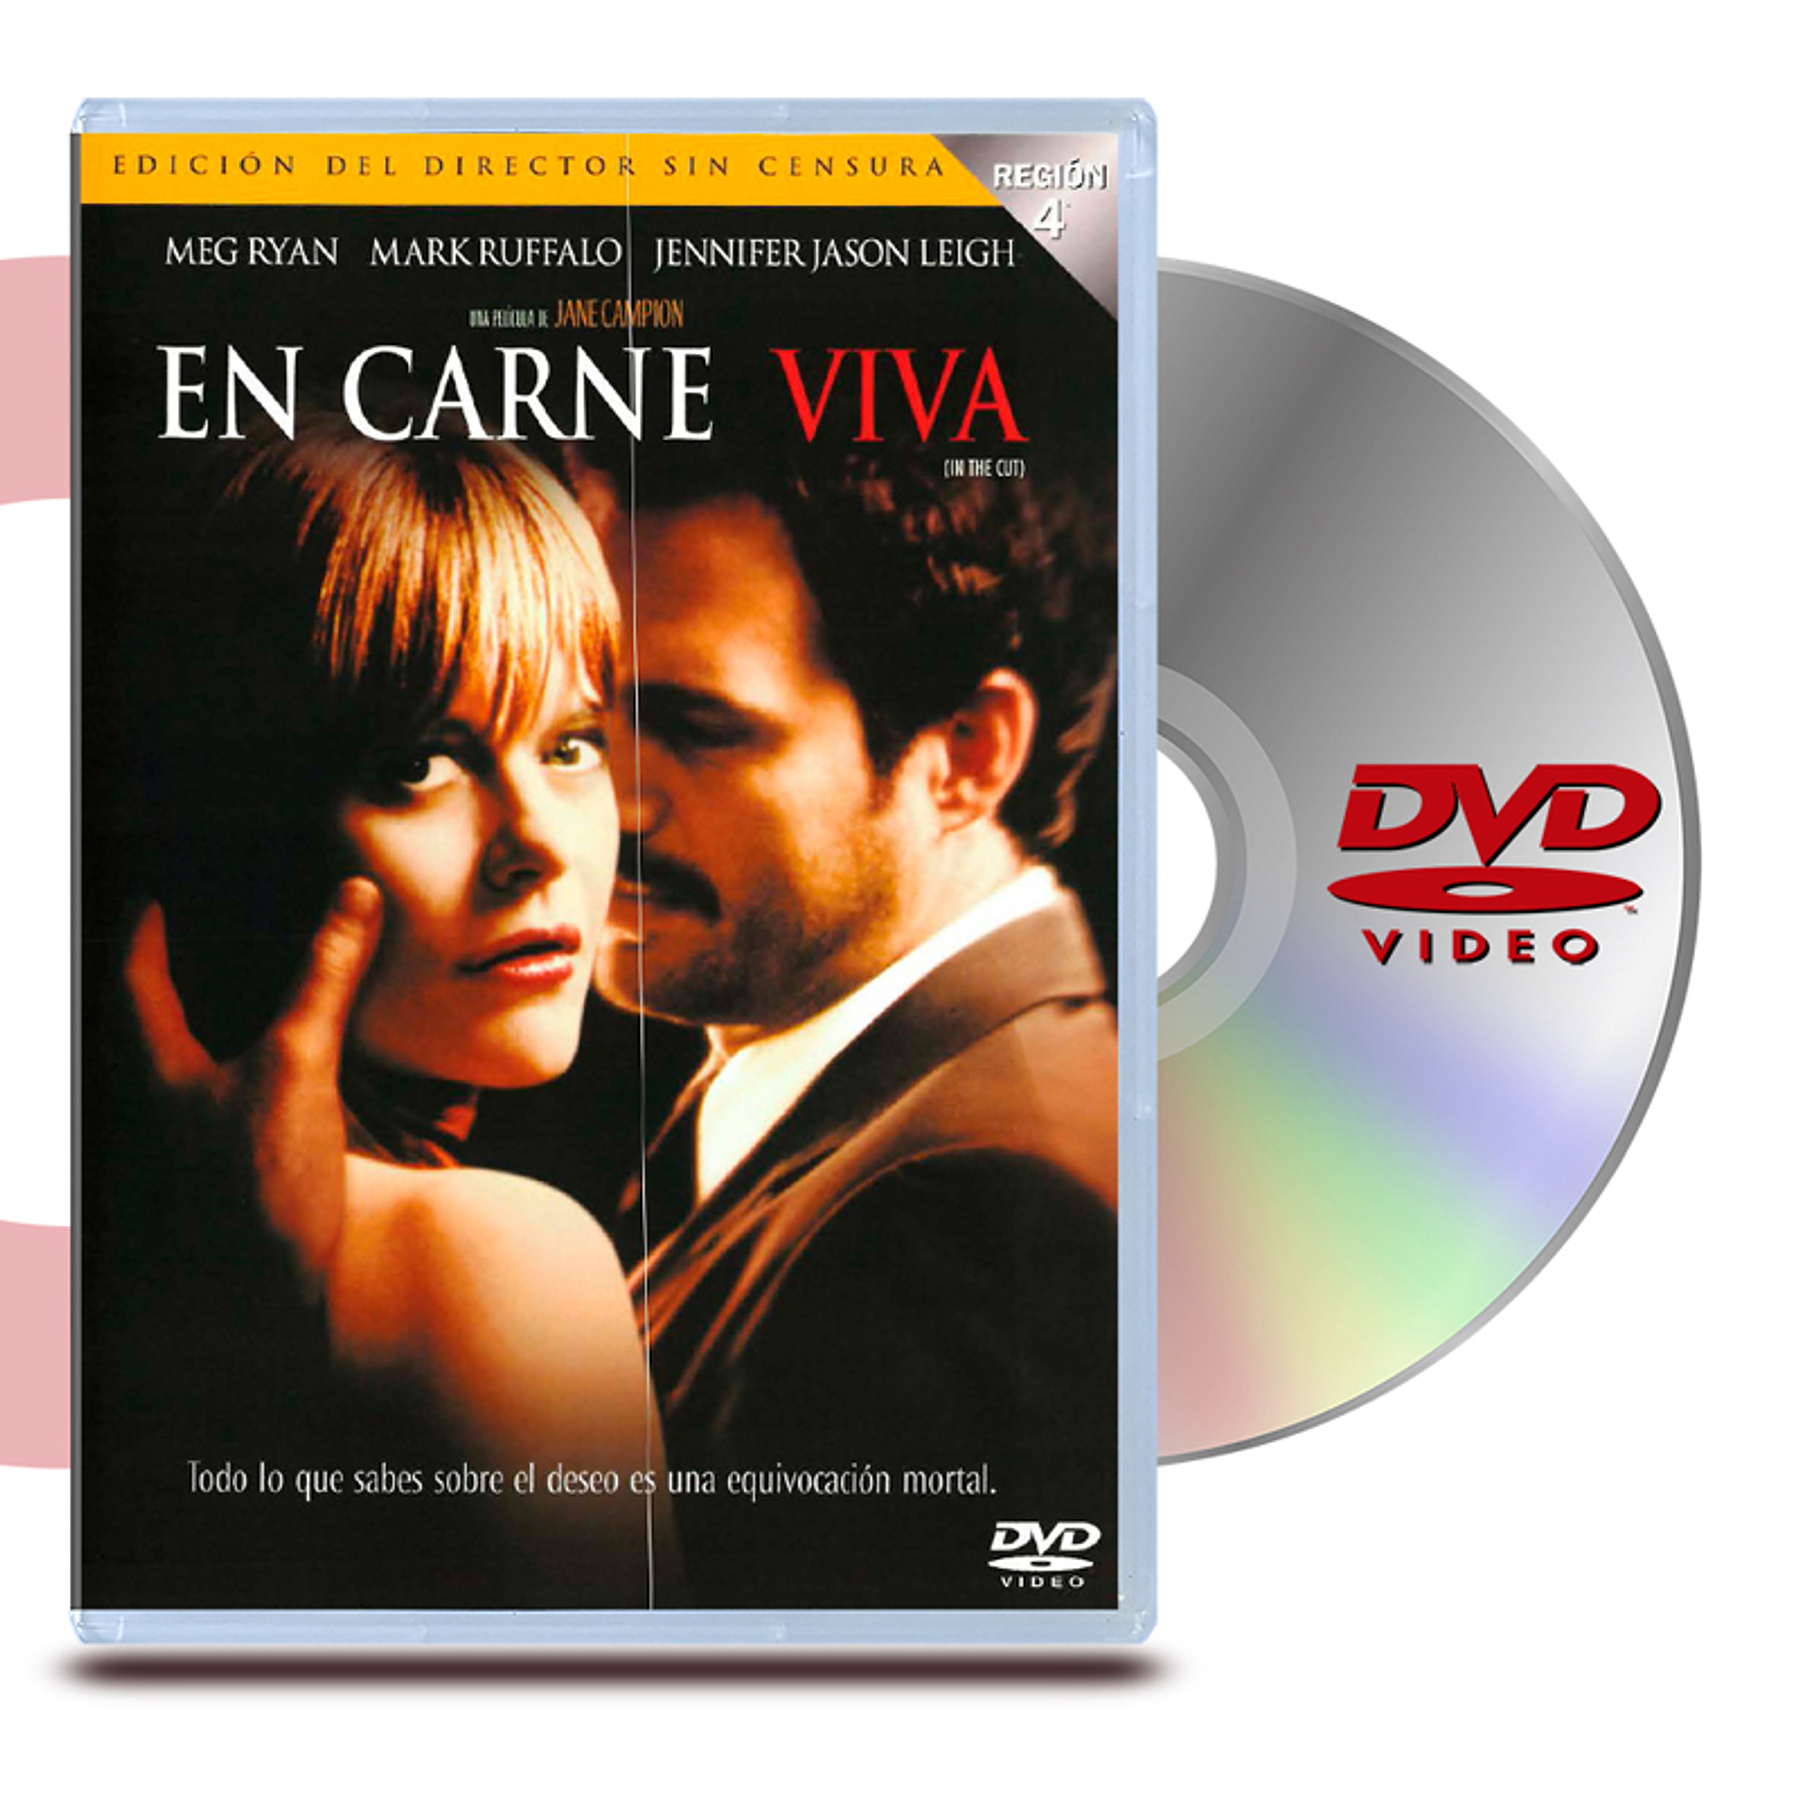 DVD EN CARNE VIVA